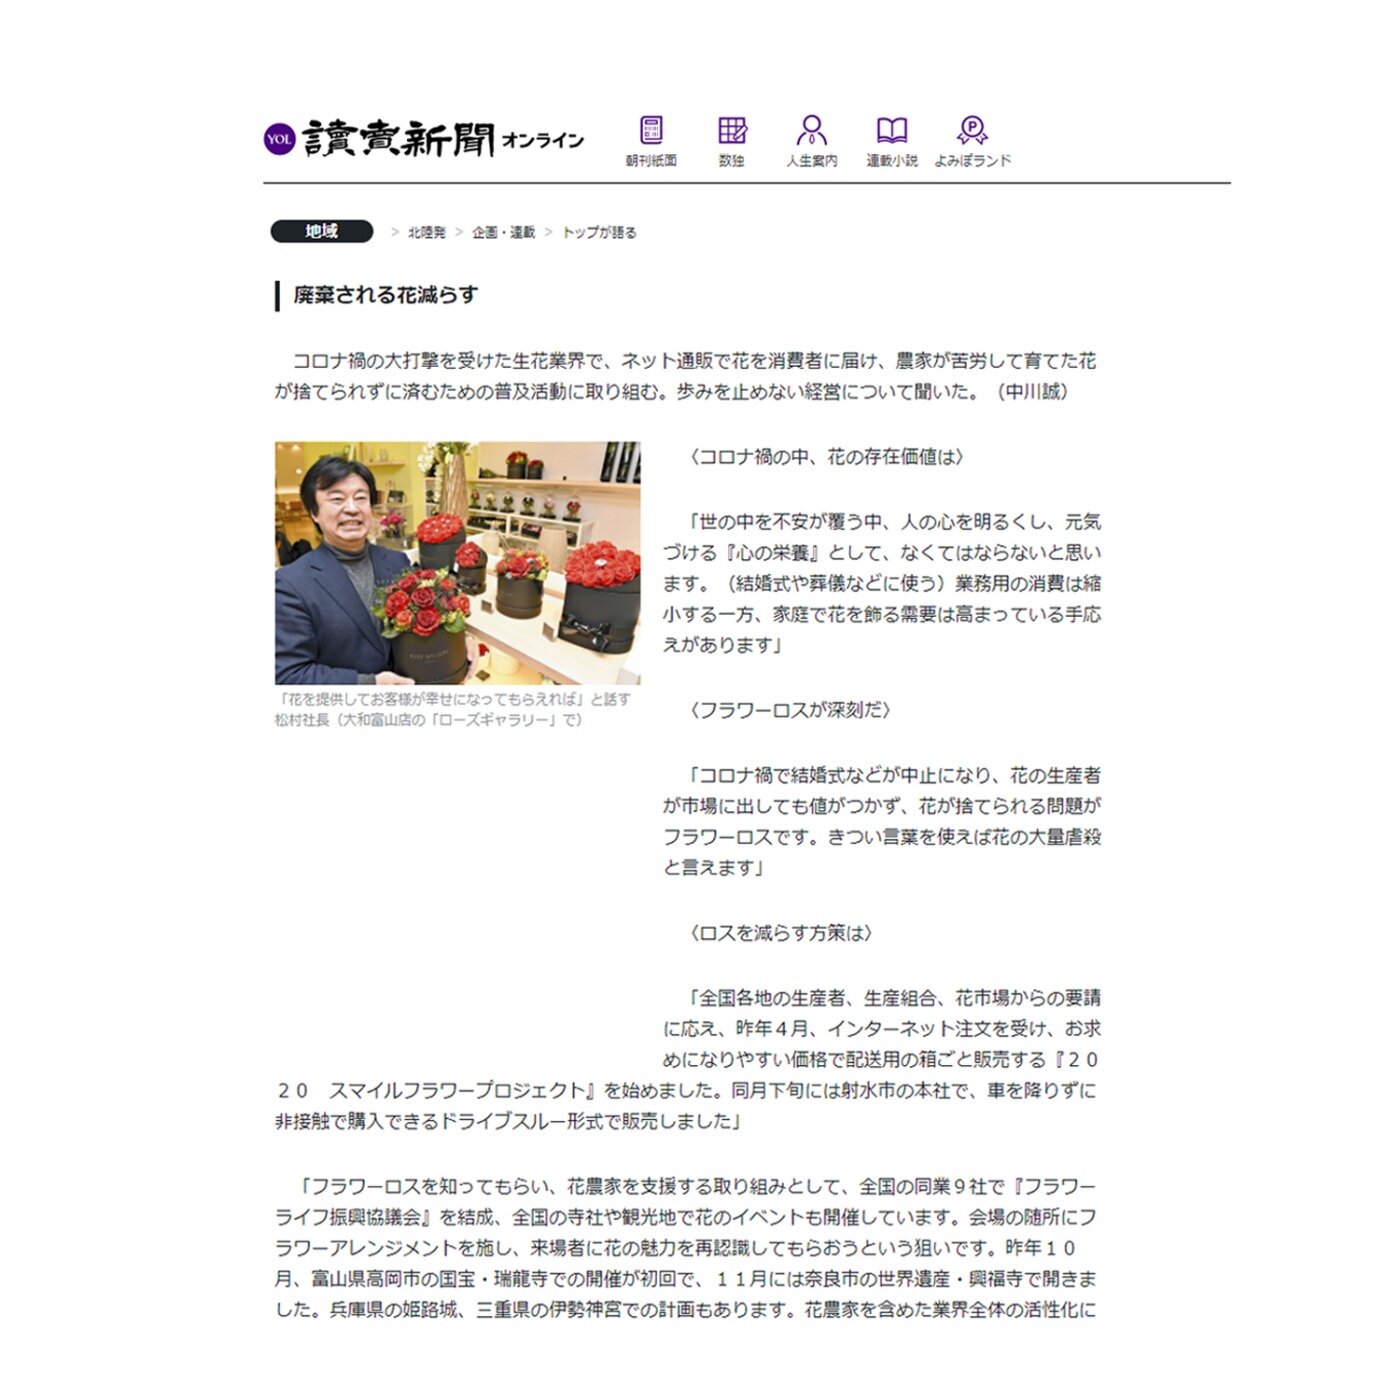  読売新聞の「トップが語る」のコーナーに弊社の代表である松村が掲載されました。（2021年1月31日）